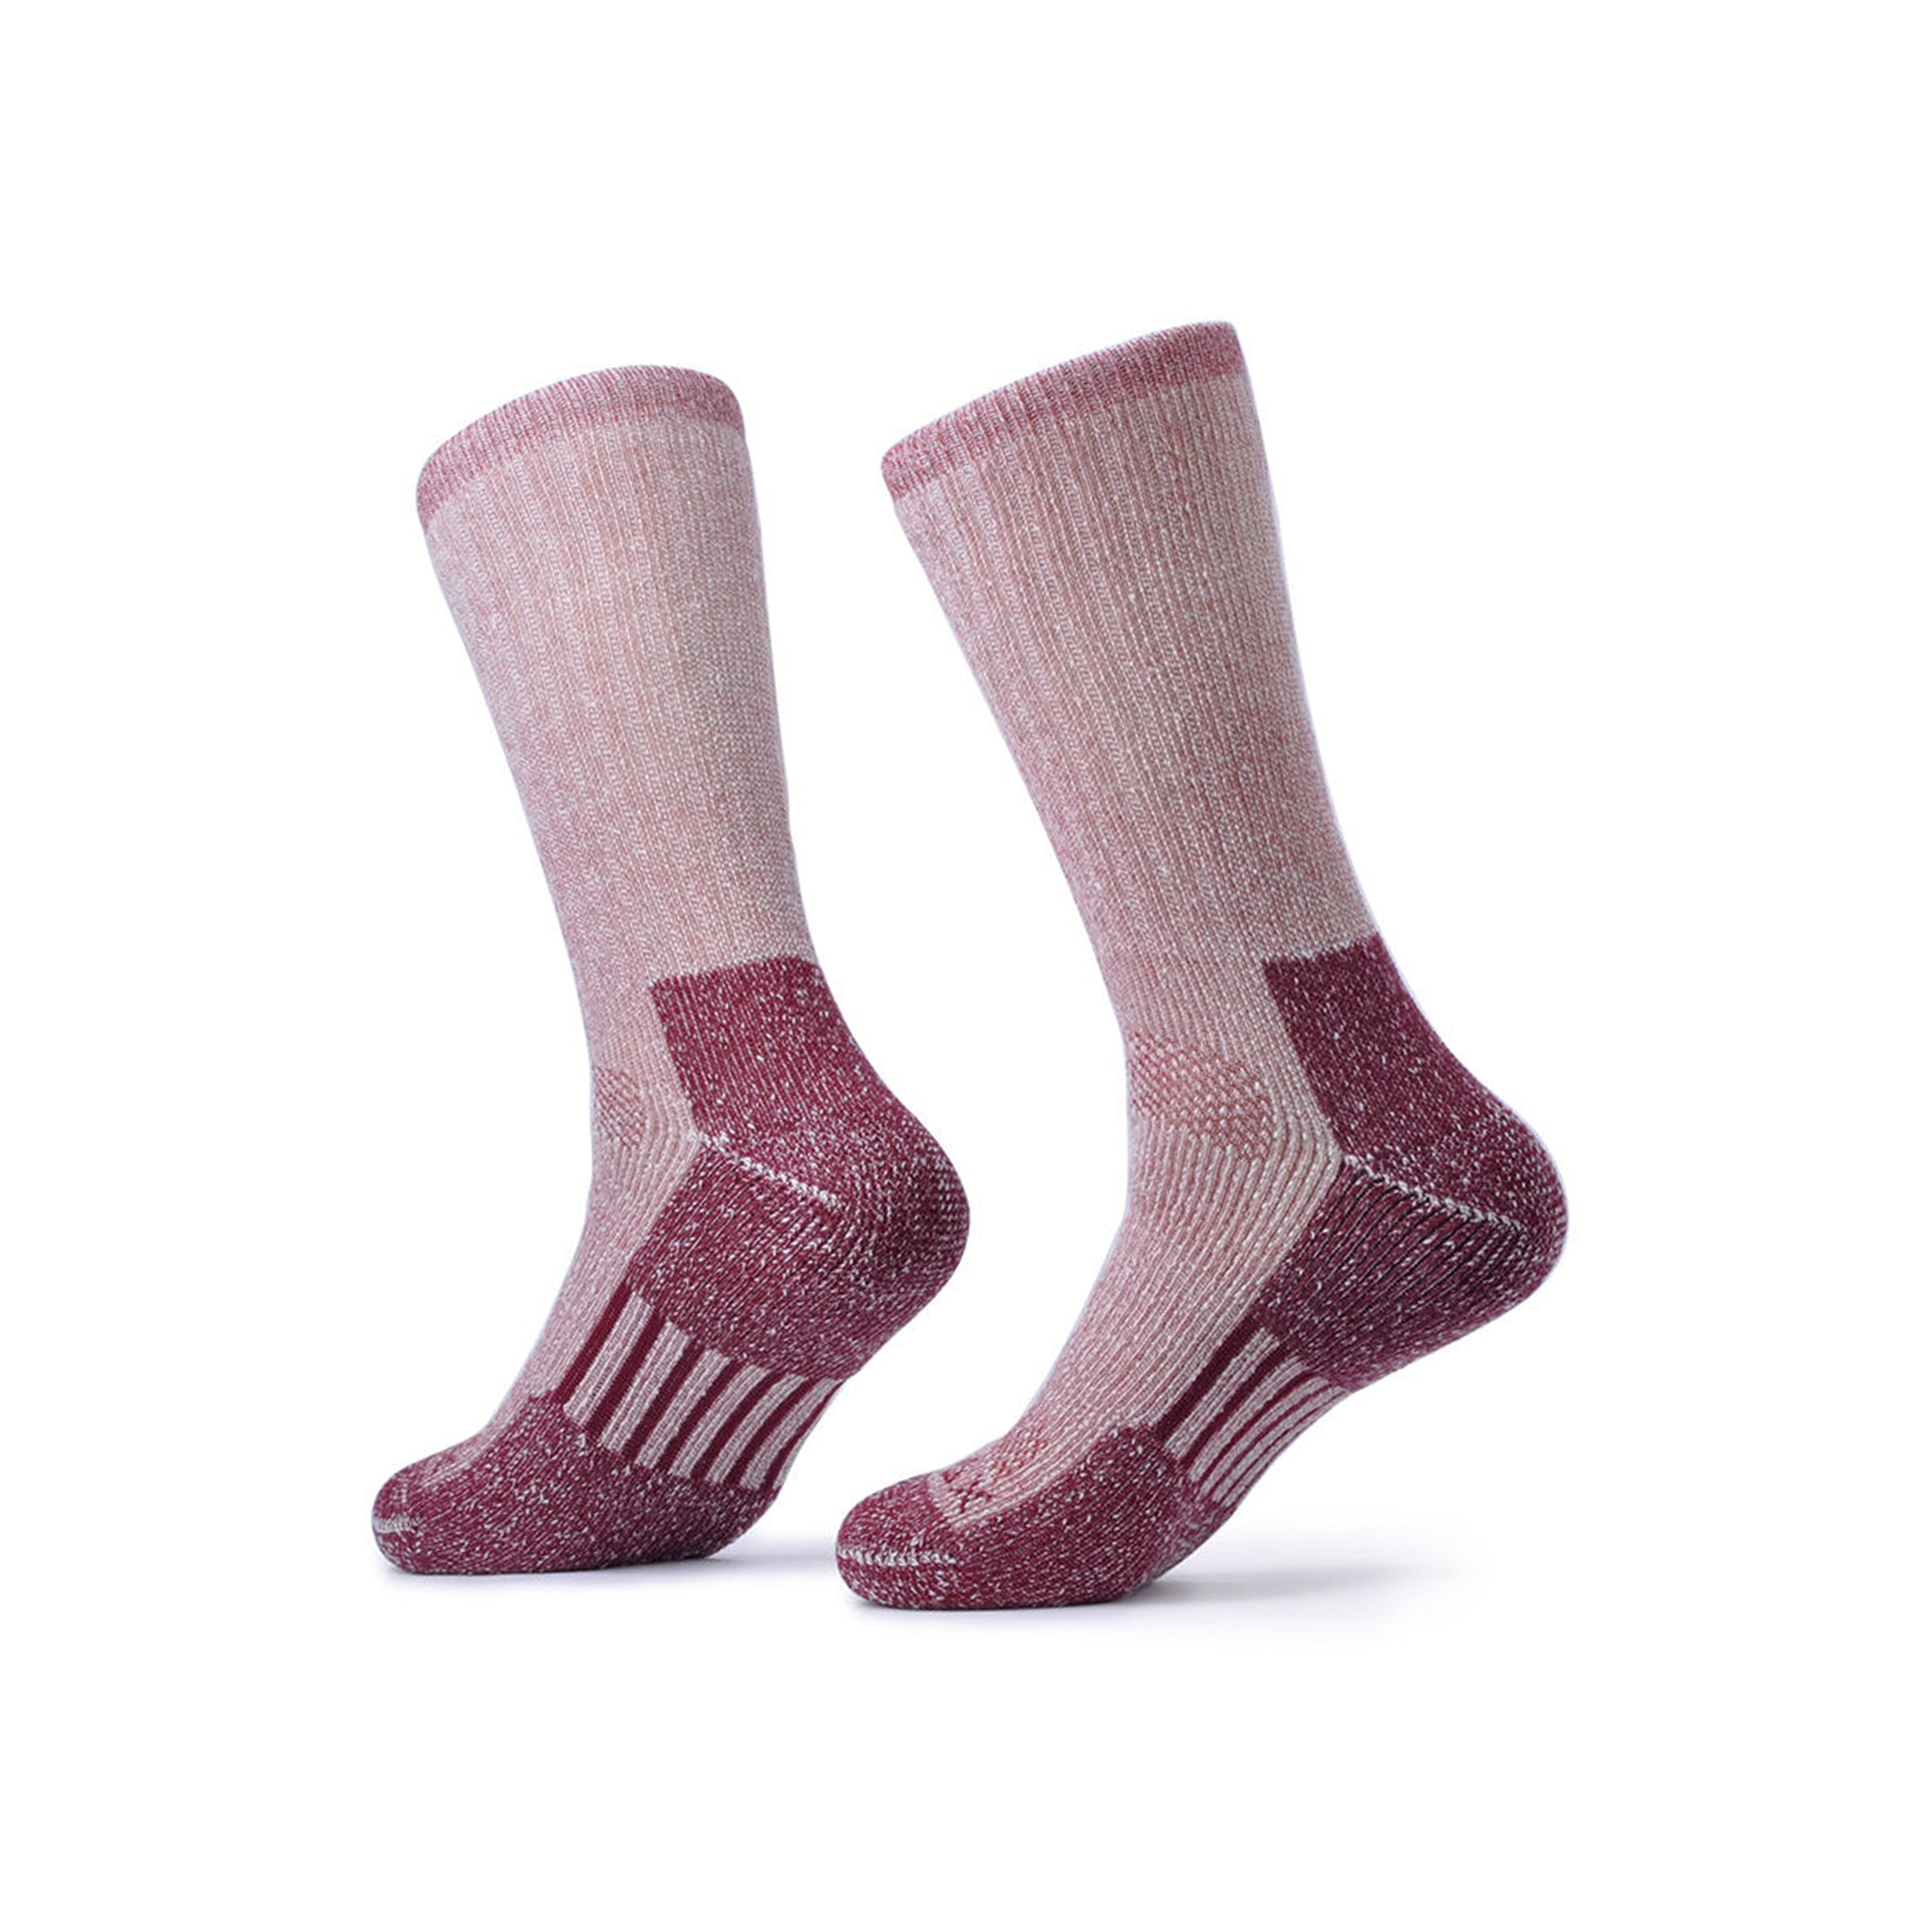 SOLAX 2 pairs Merino Wool Outdoor Socks